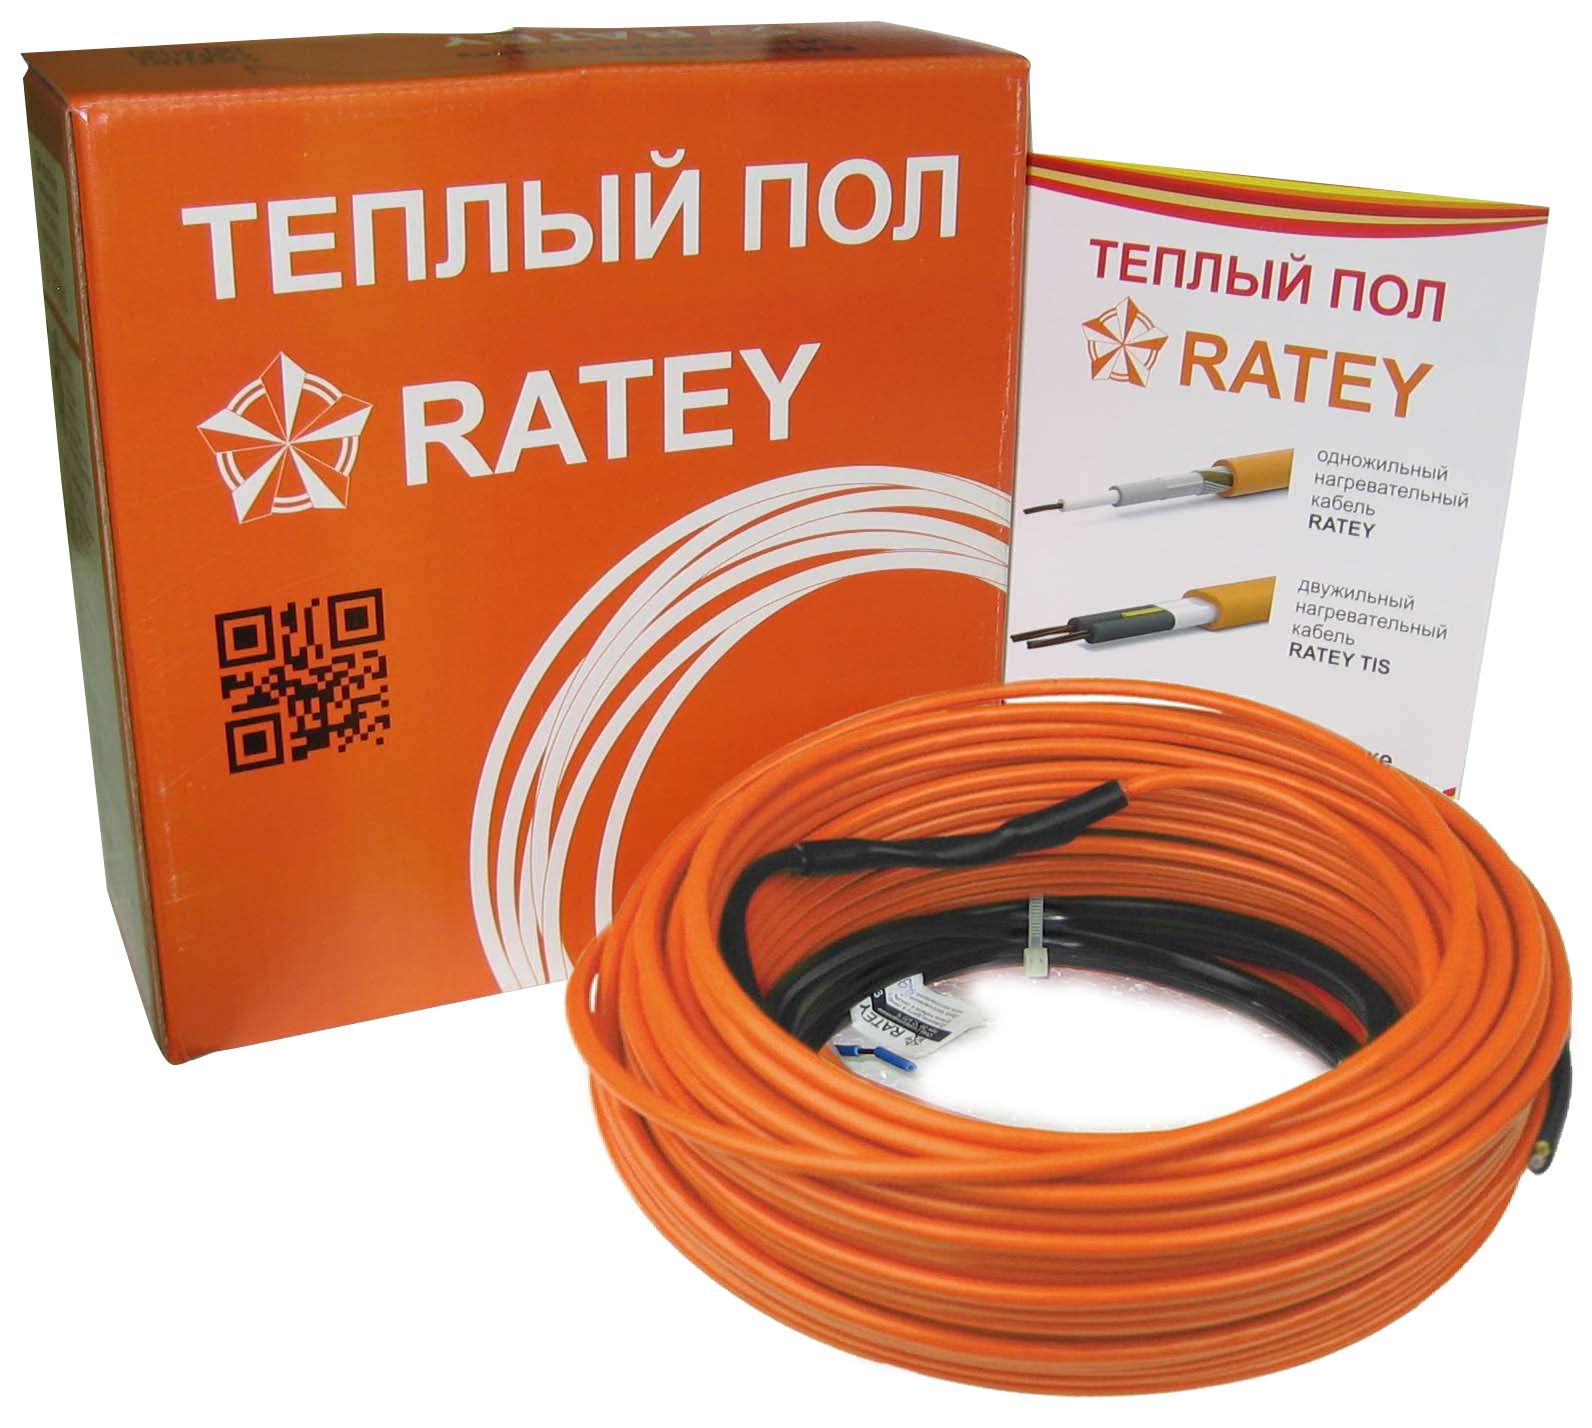 Электрический теплый пол Ratey RD1 0.670 в интернет-магазине, главное фото